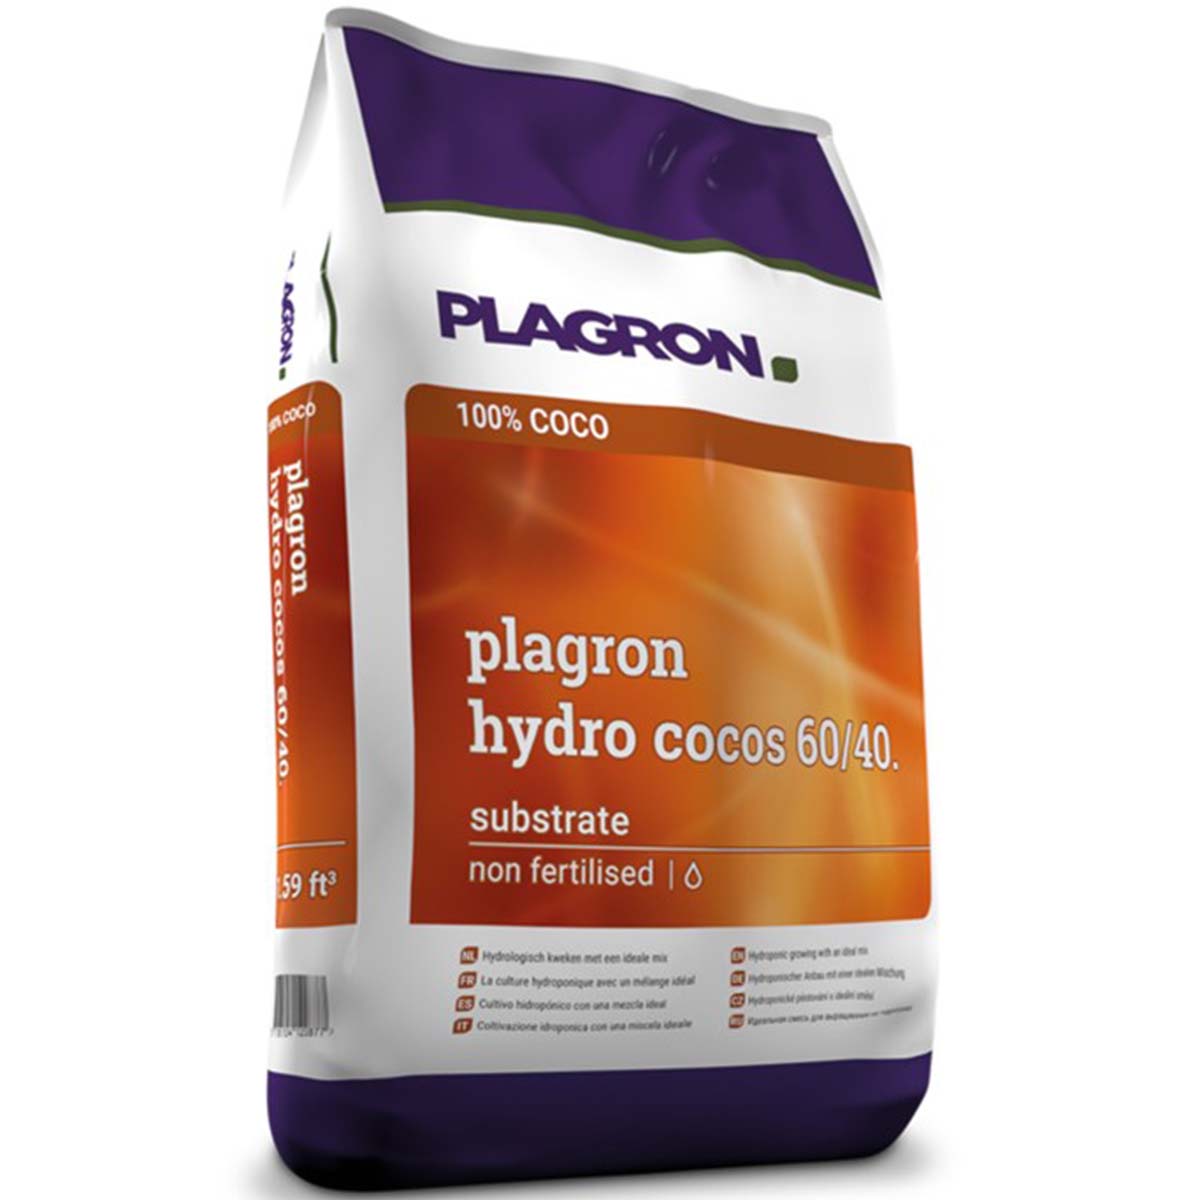 Plagron Hydro Cocos 60/40